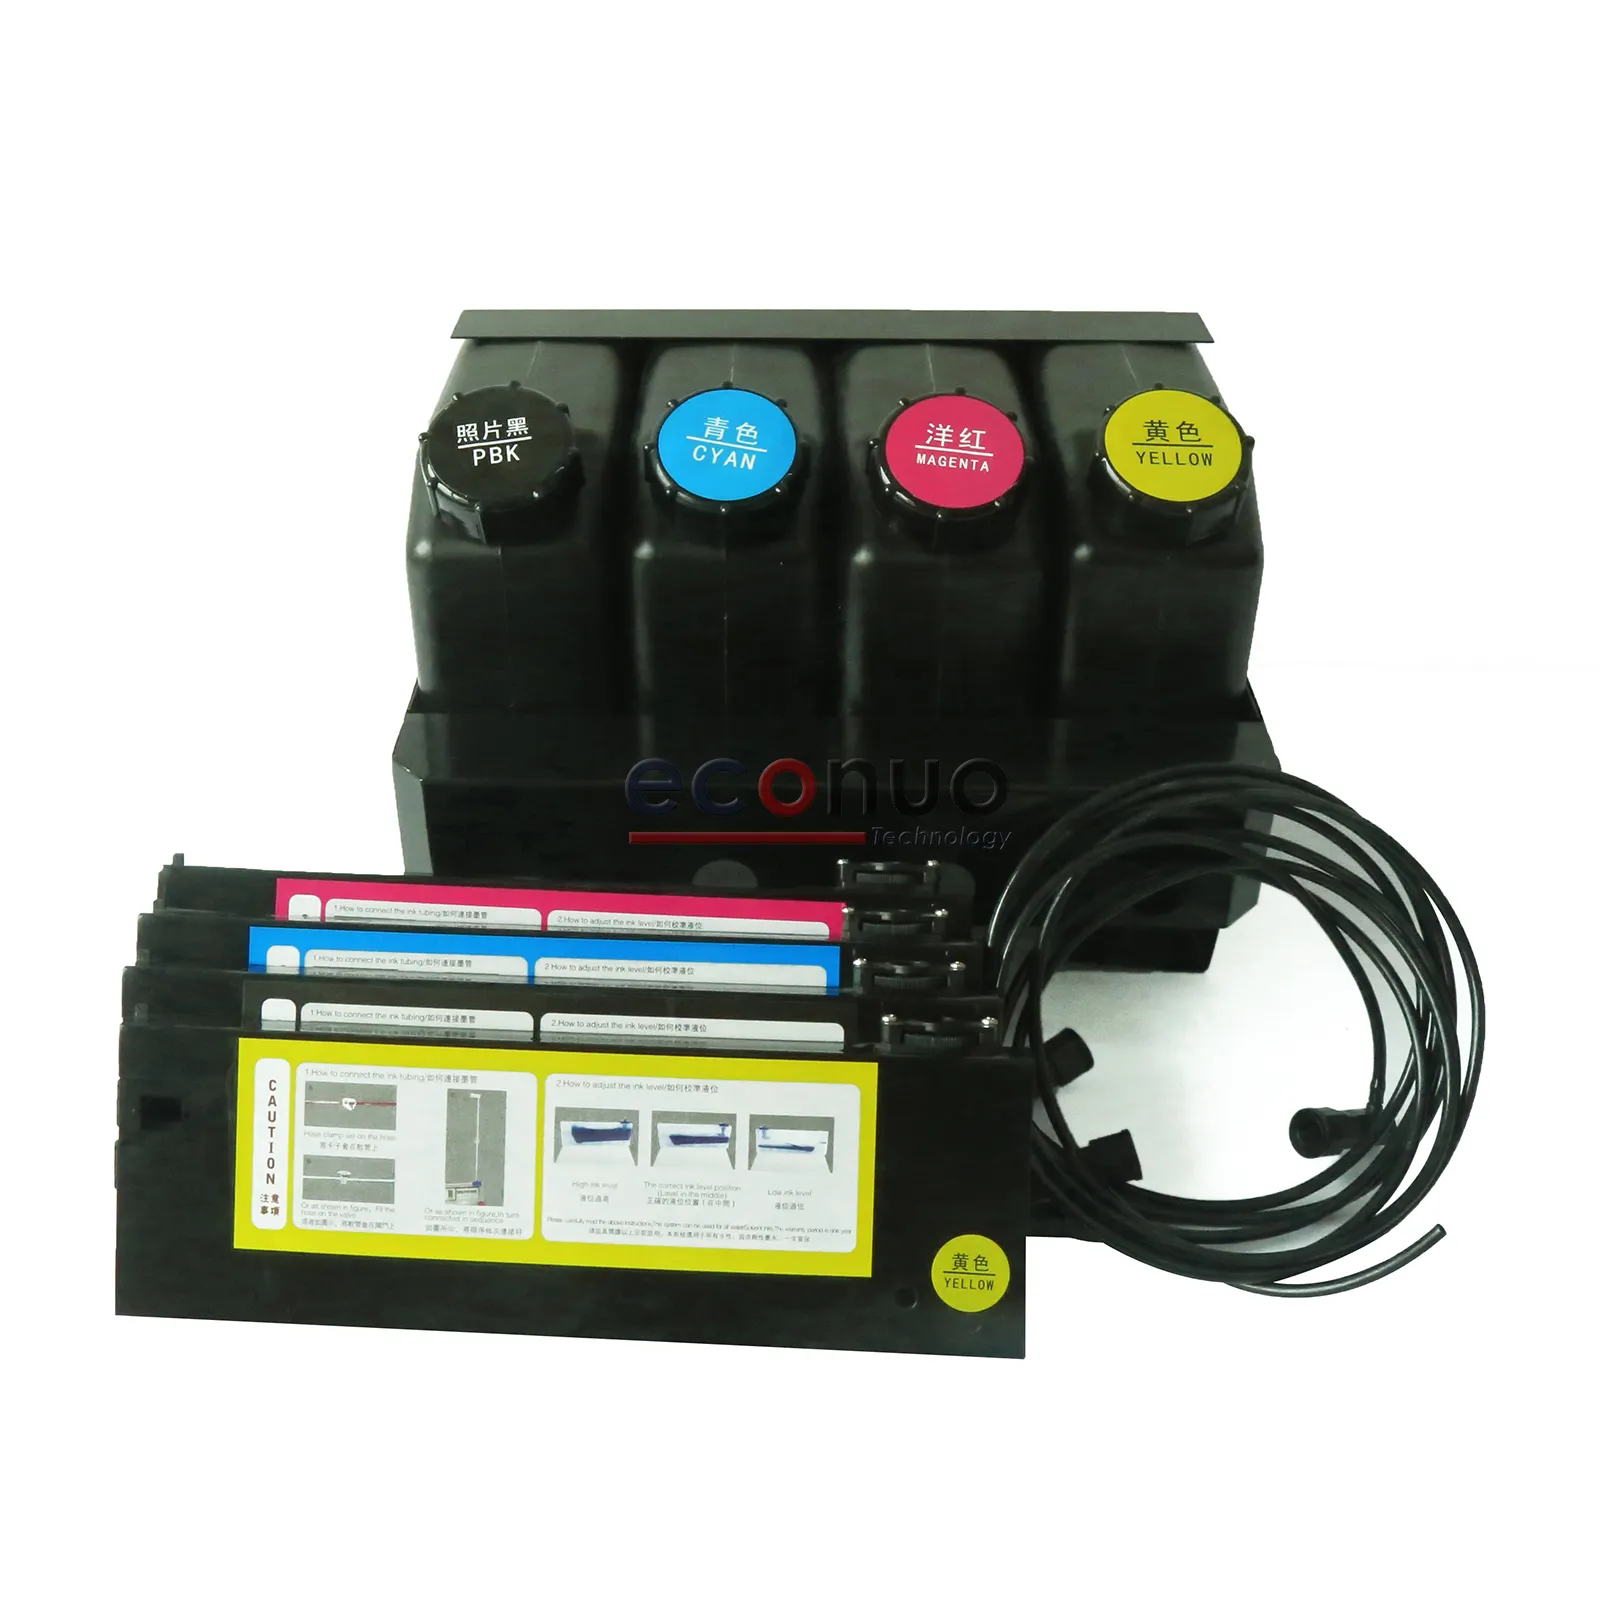 Impressora ciss tinta sistema a granel 4 + 4 cor uv sub tanque ciss tinta a granel sistema para mutoh/roland uv impressora